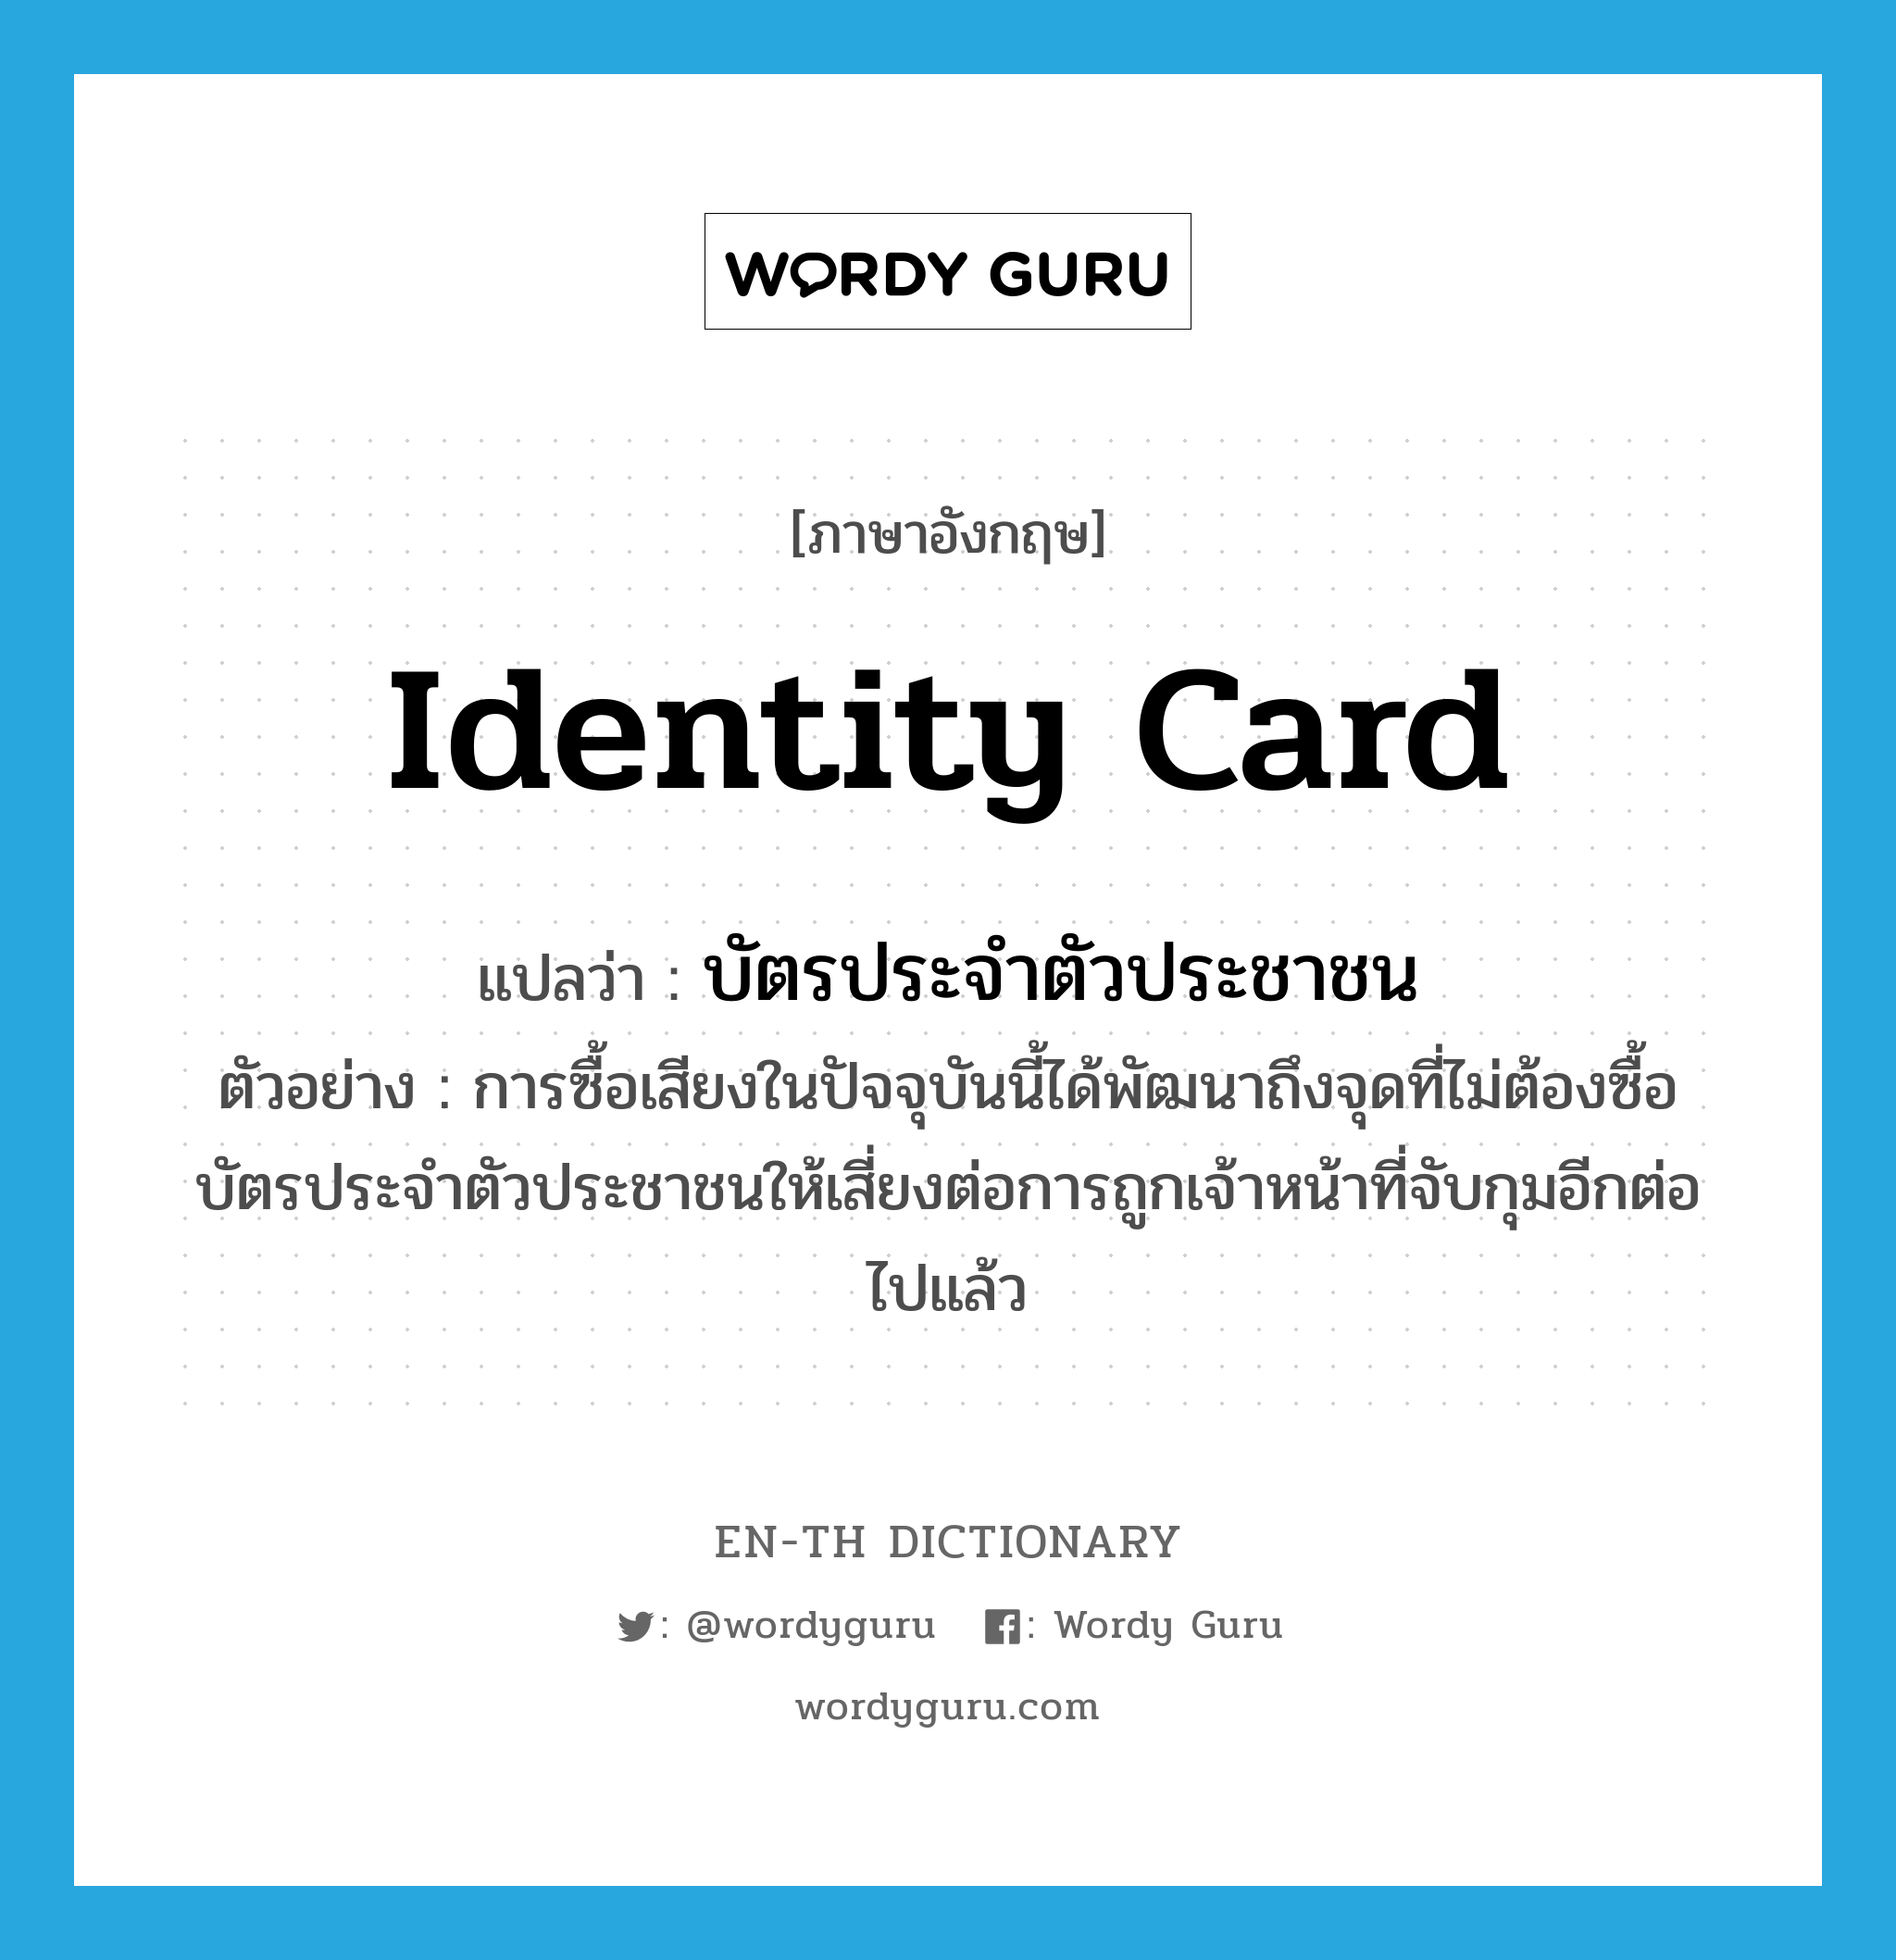 identity card แปลว่า?, คำศัพท์ภาษาอังกฤษ identity card แปลว่า บัตรประจำตัวประชาชน ประเภท N ตัวอย่าง การซื้อเสียงในปัจจุบันนี้ได้พัฒนาถึงจุดที่ไม่ต้องซื้อบัตรประจำตัวประชาชนให้เสี่ยงต่อการถูกเจ้าหน้าที่จับกุมอีกต่อไปแล้ว หมวด N